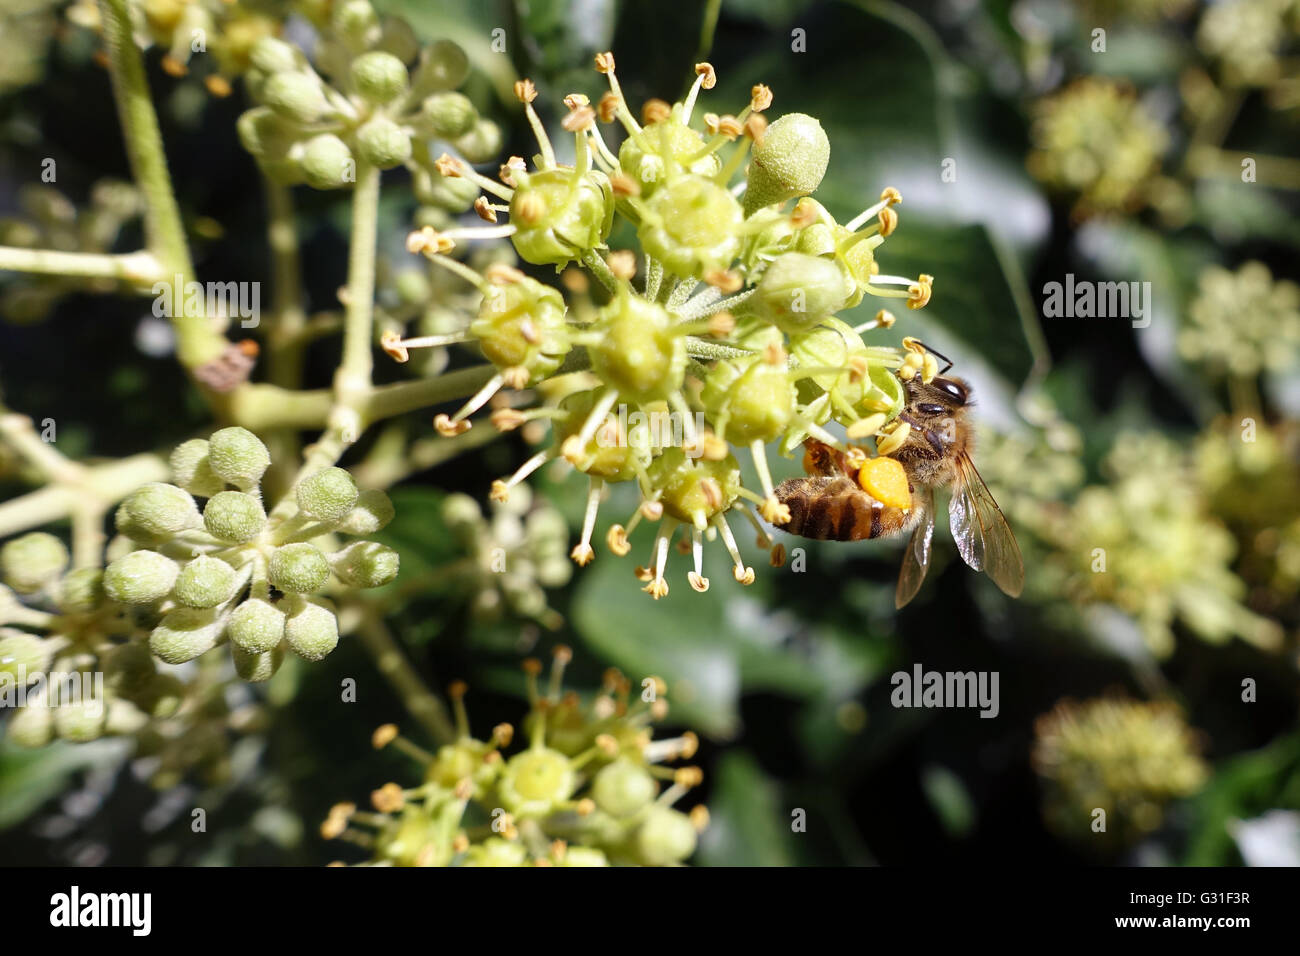 Taormia, Italien, Biene Blütenstaub Slips sucht Nektar auf eine Efeubluete Stockfoto